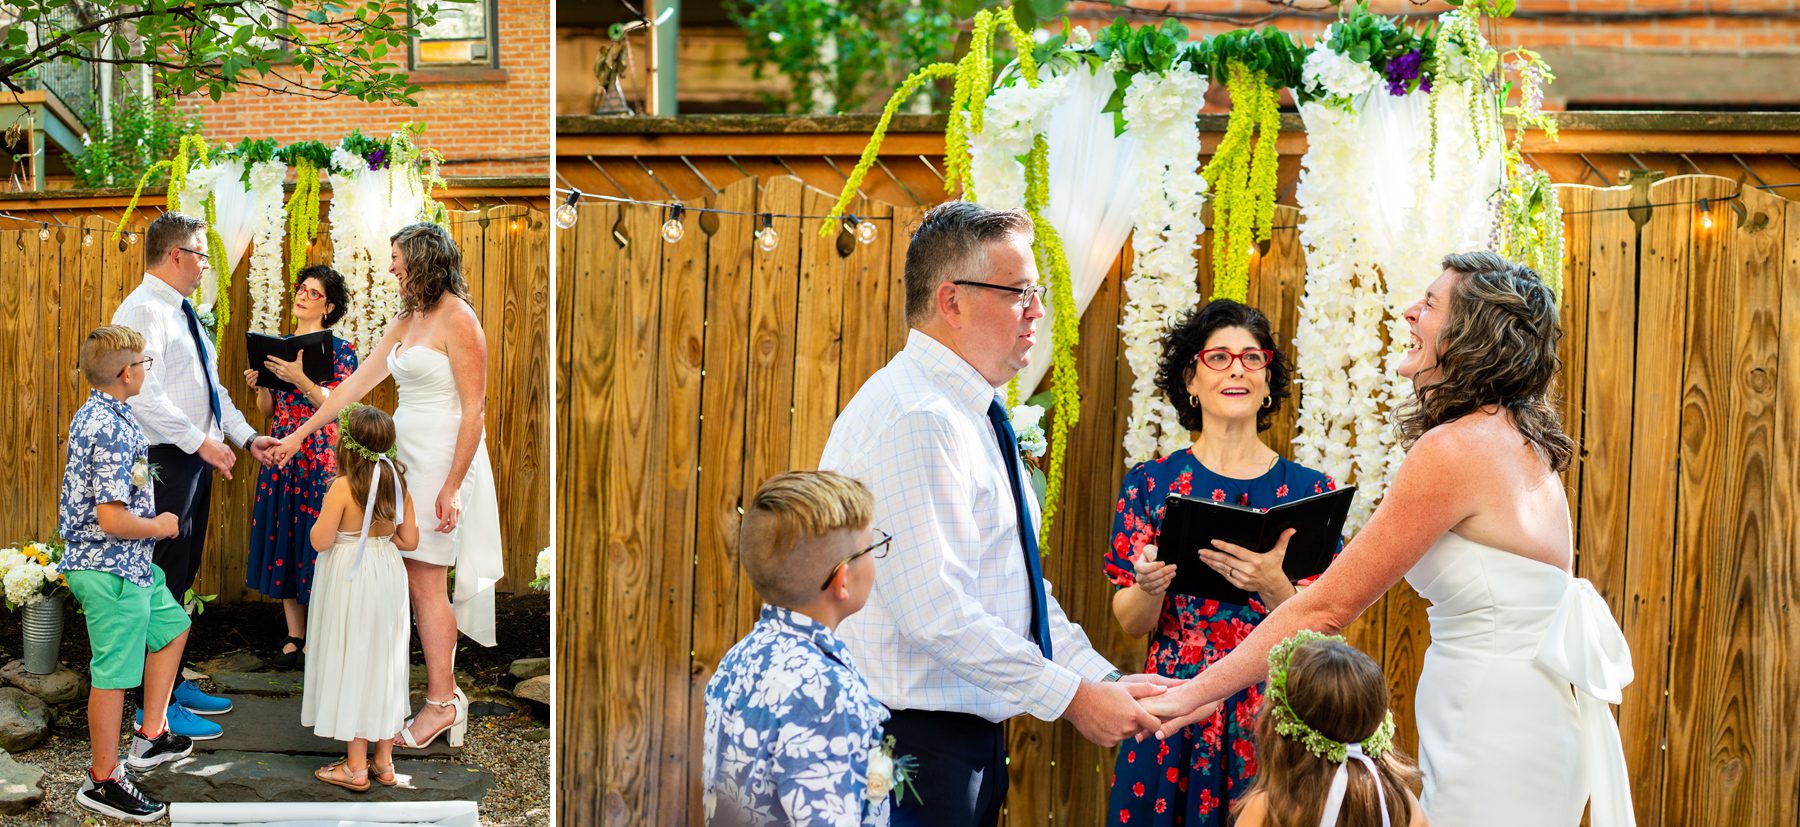 Having a Backyard Wedding in Brooklyn 